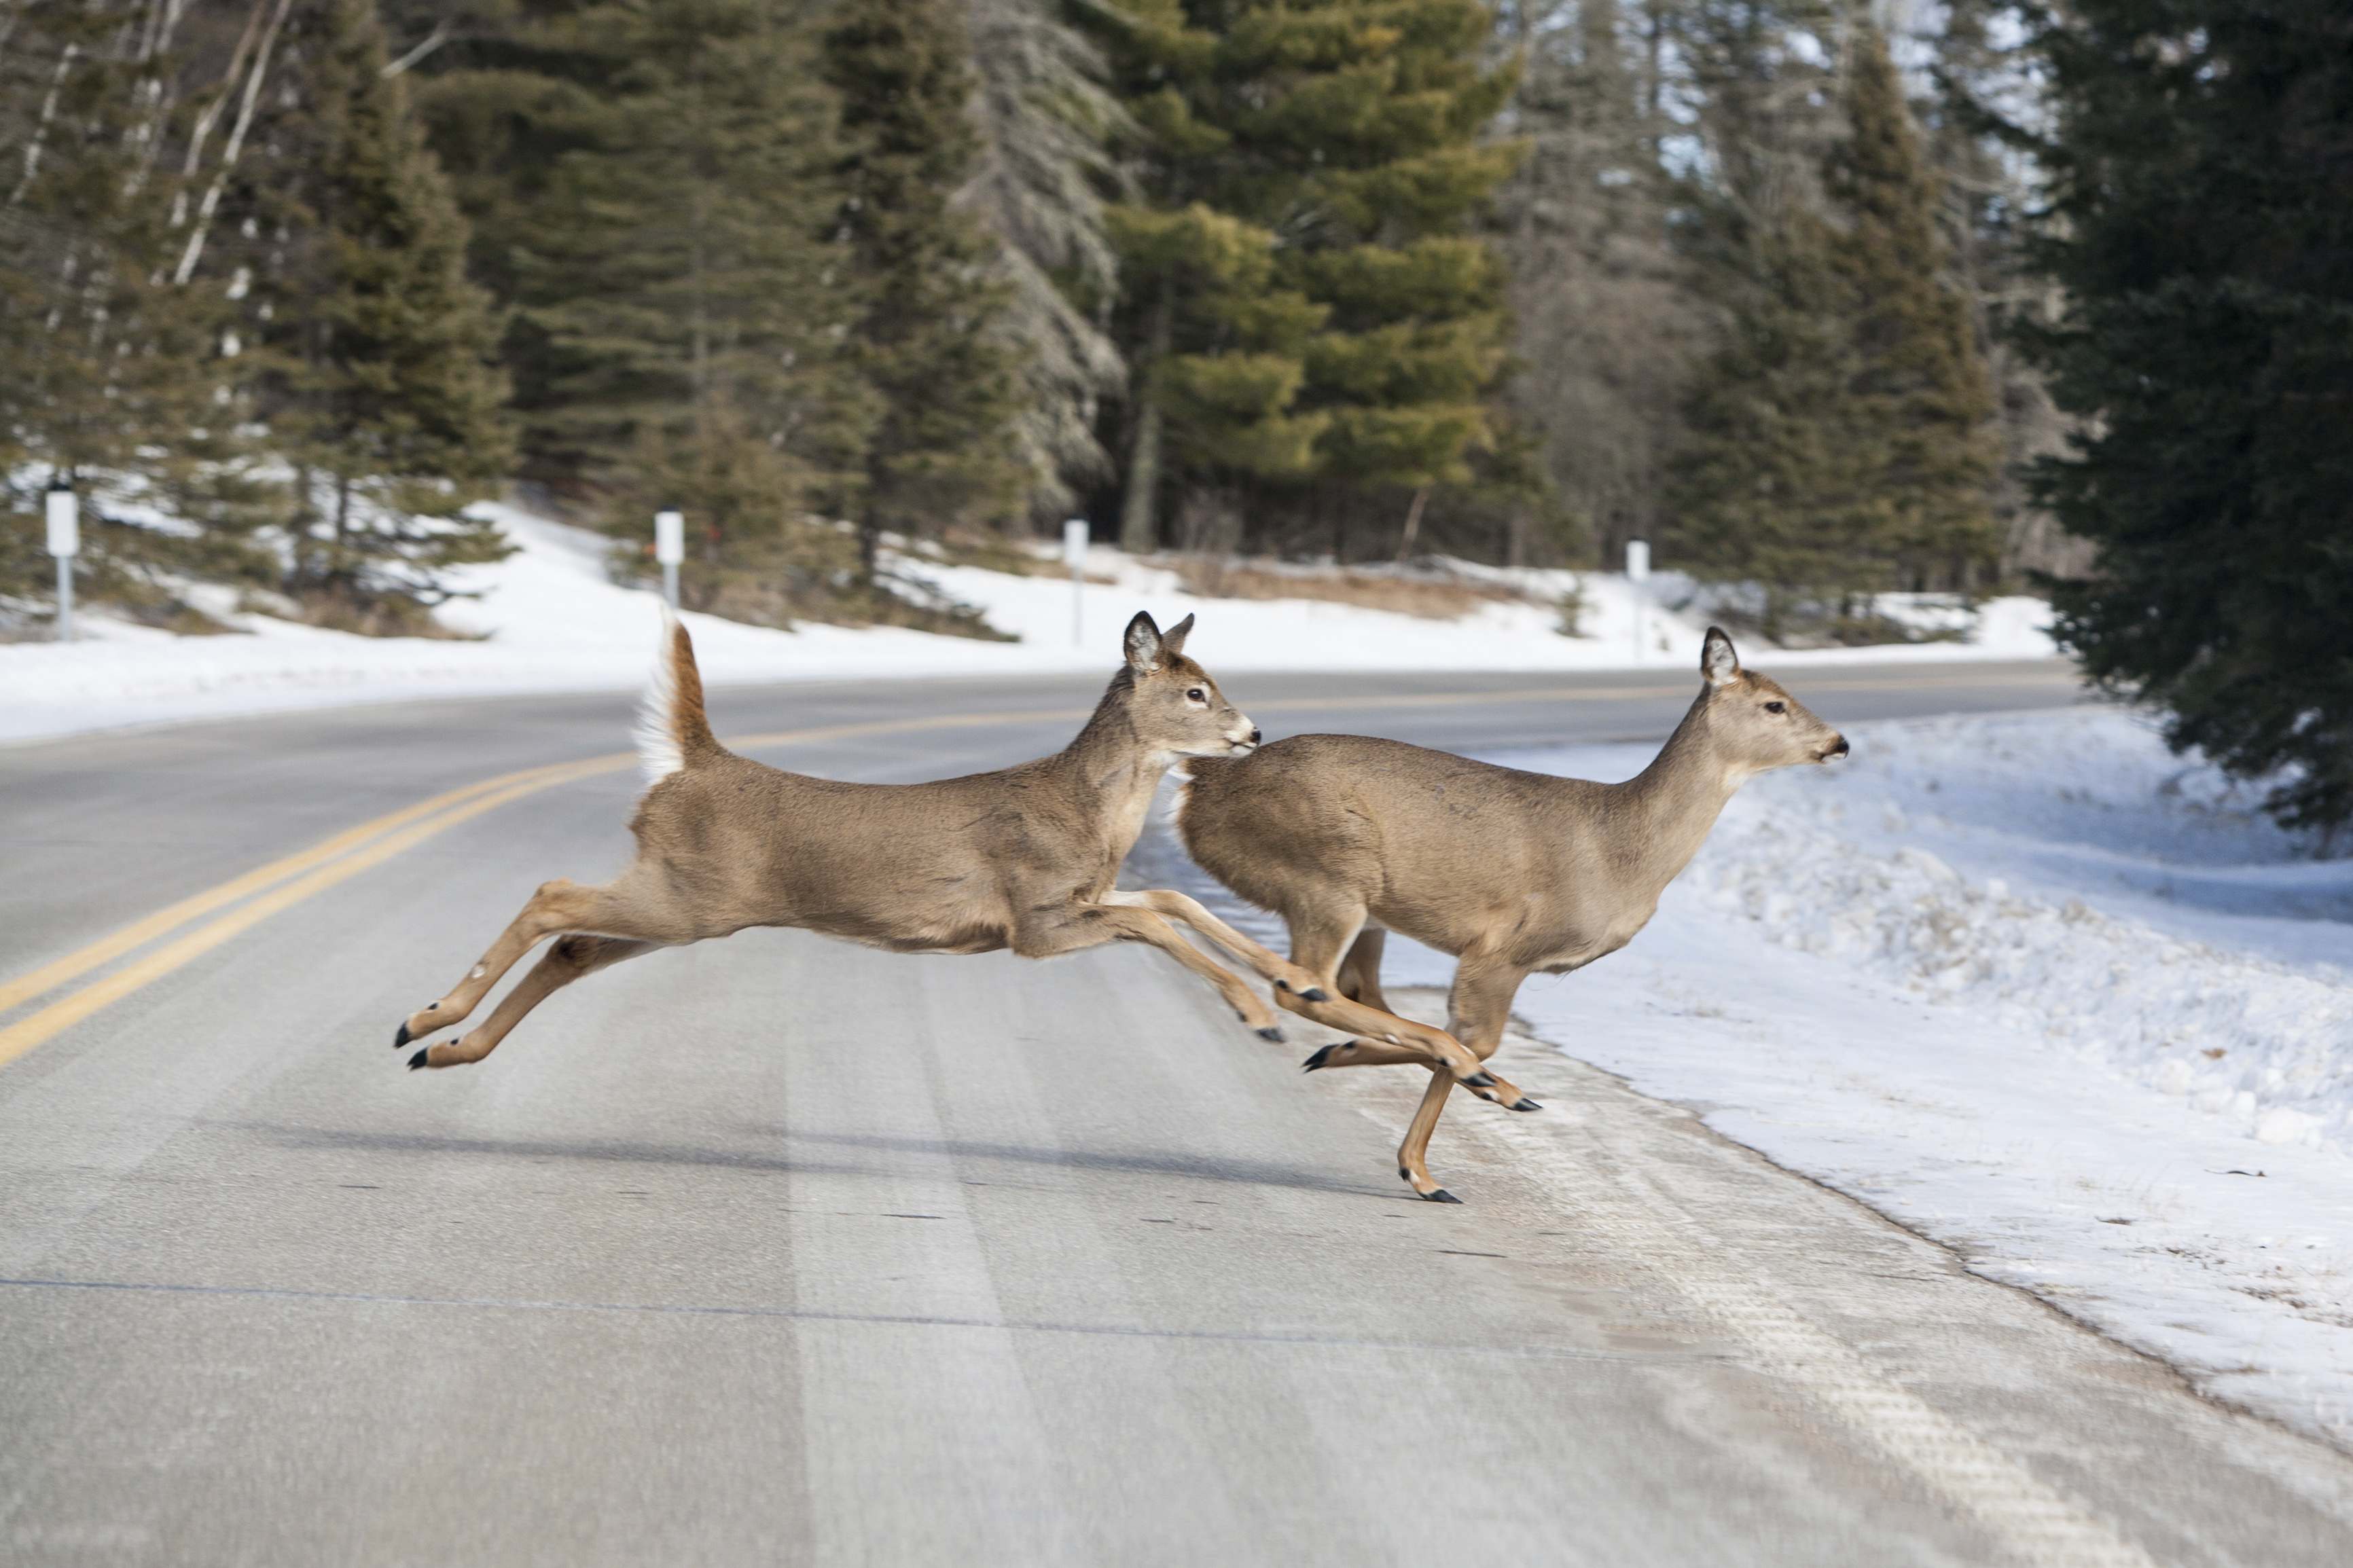 2 deer running across the road